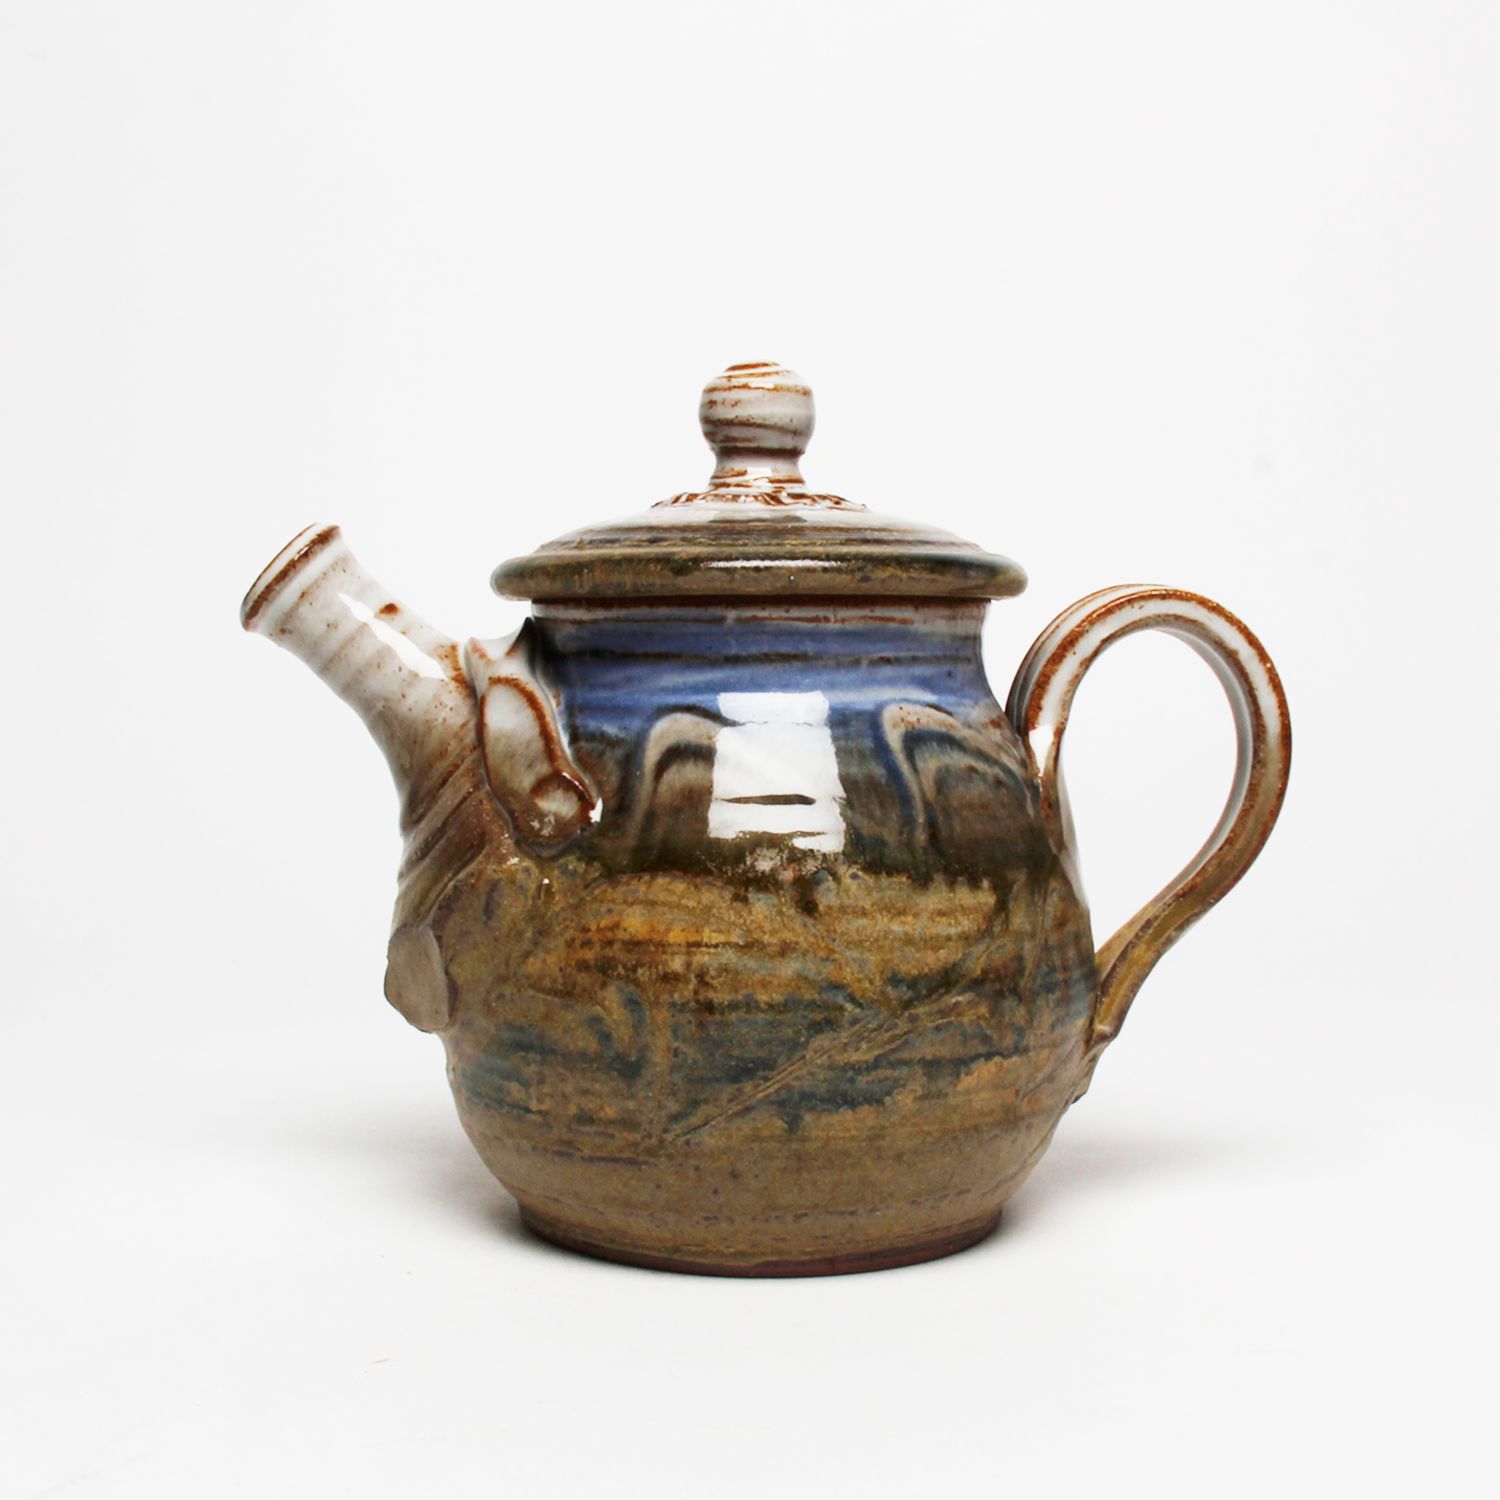 Wayne Cardinalli: Blue Teapot Product Image 4 of 4